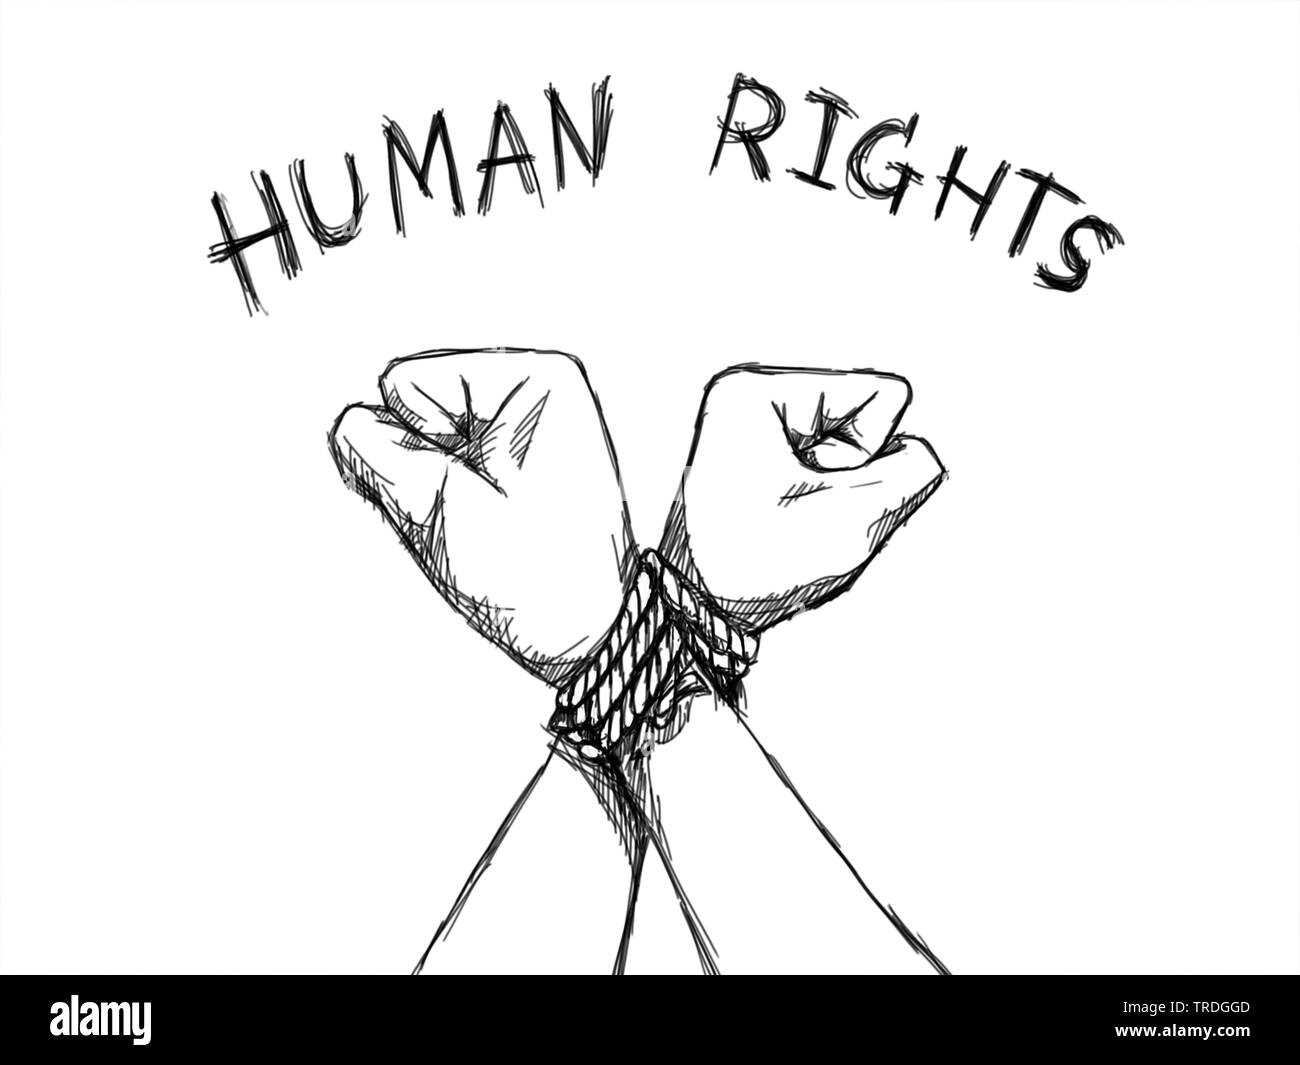 La Journée des droits de l'illustrateur. concept esquisse de la main de l'homme étaient attachés avec une corde avec le texte de l'homme Banque D'Images